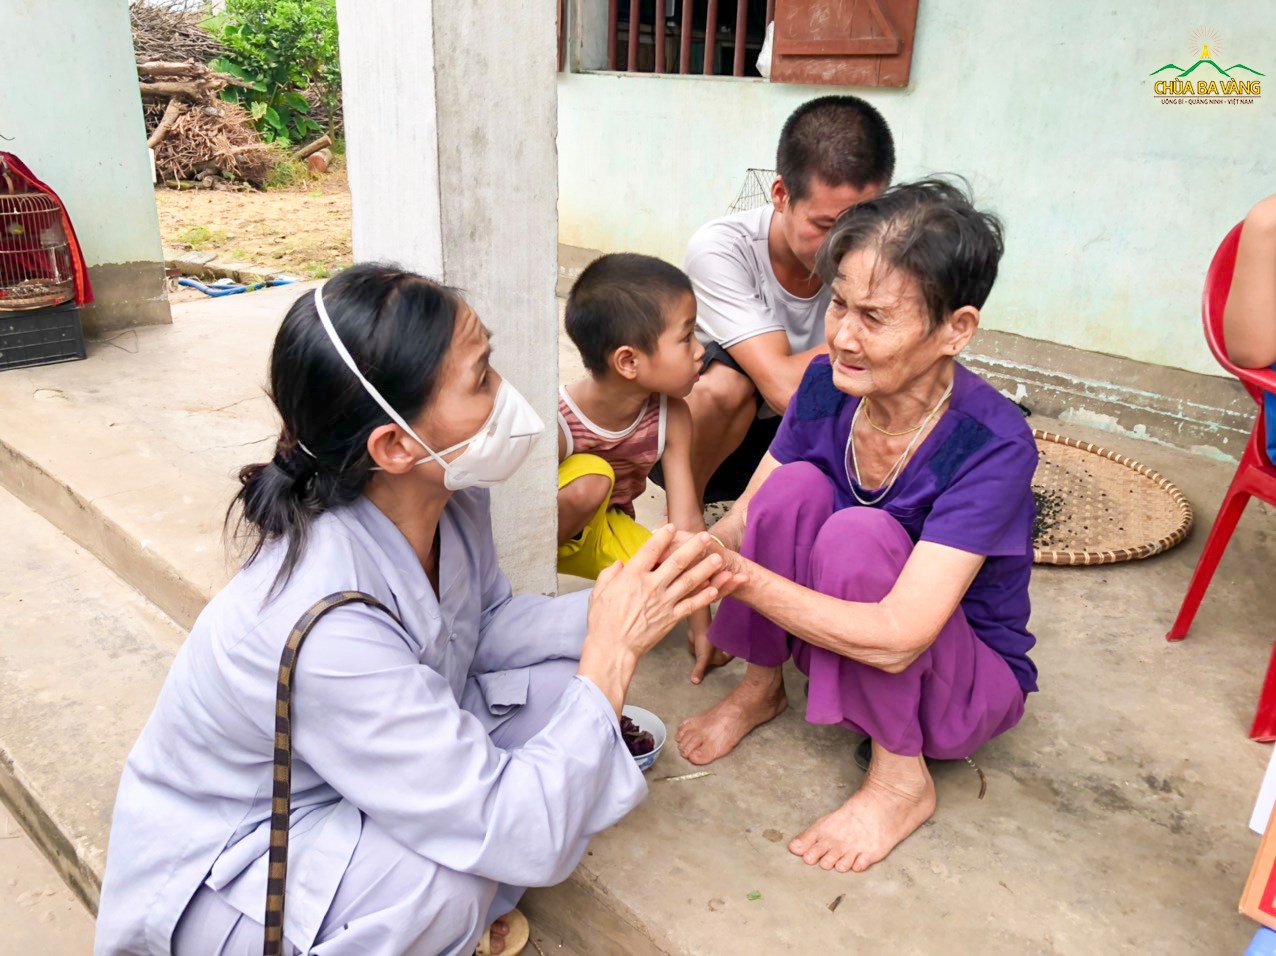 Phật tử chùa Ba Vàng hỏi thăm tới một gia đình có hoàn cảnh khó khăn tại Lục Ngạn, Bắc Giang